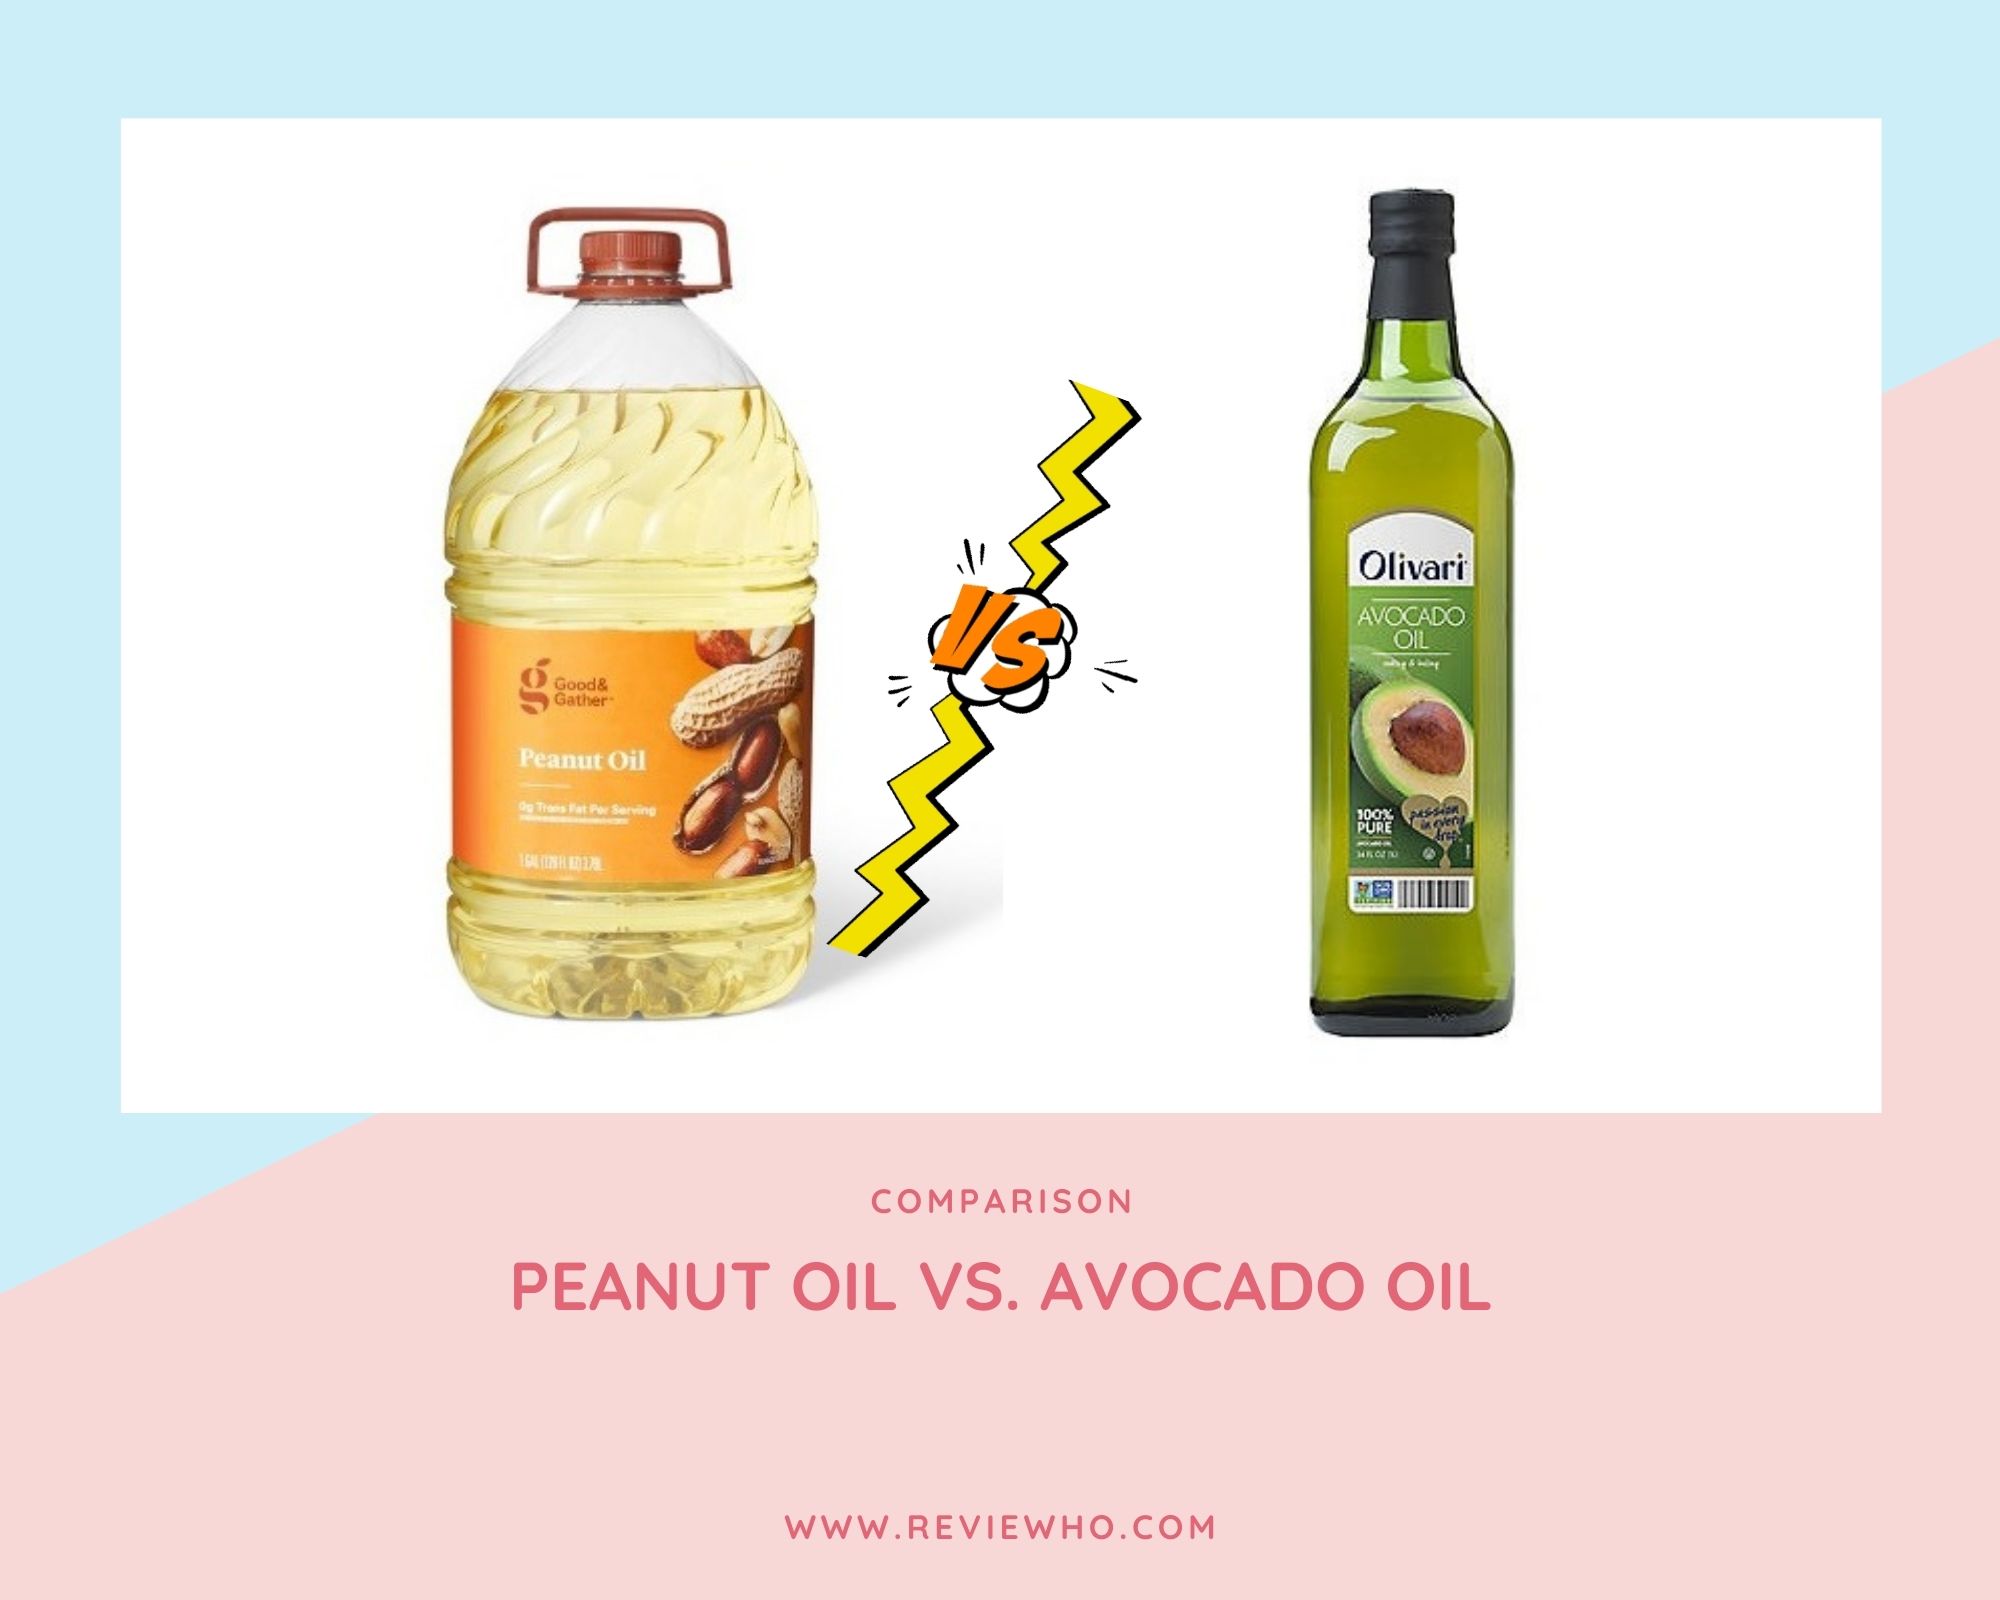 Is avocado or peanut oil healthier